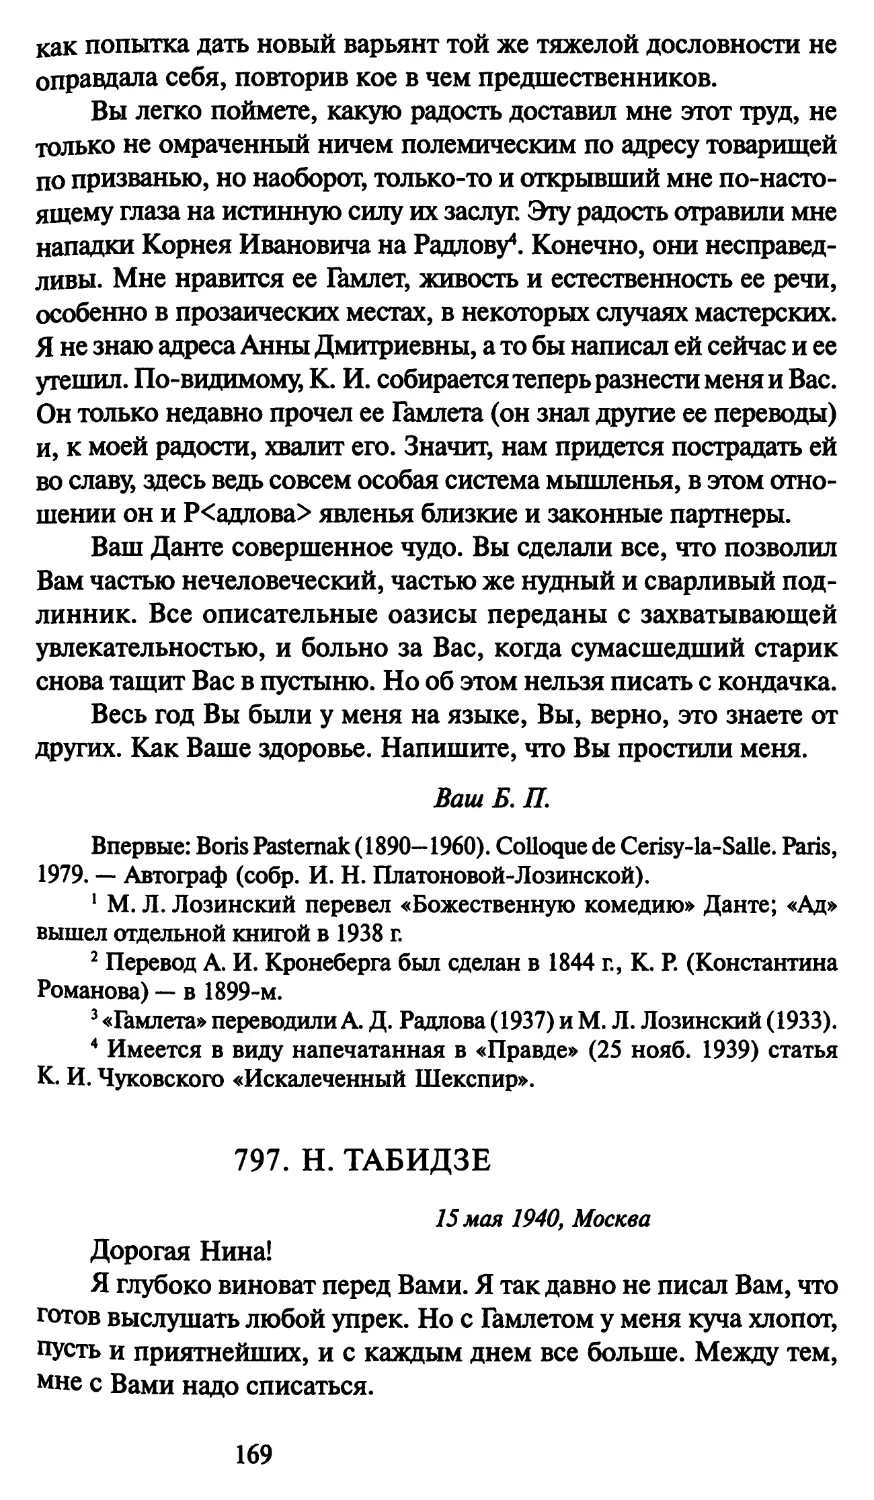 797. Н. Табидзе 15 мая 1940